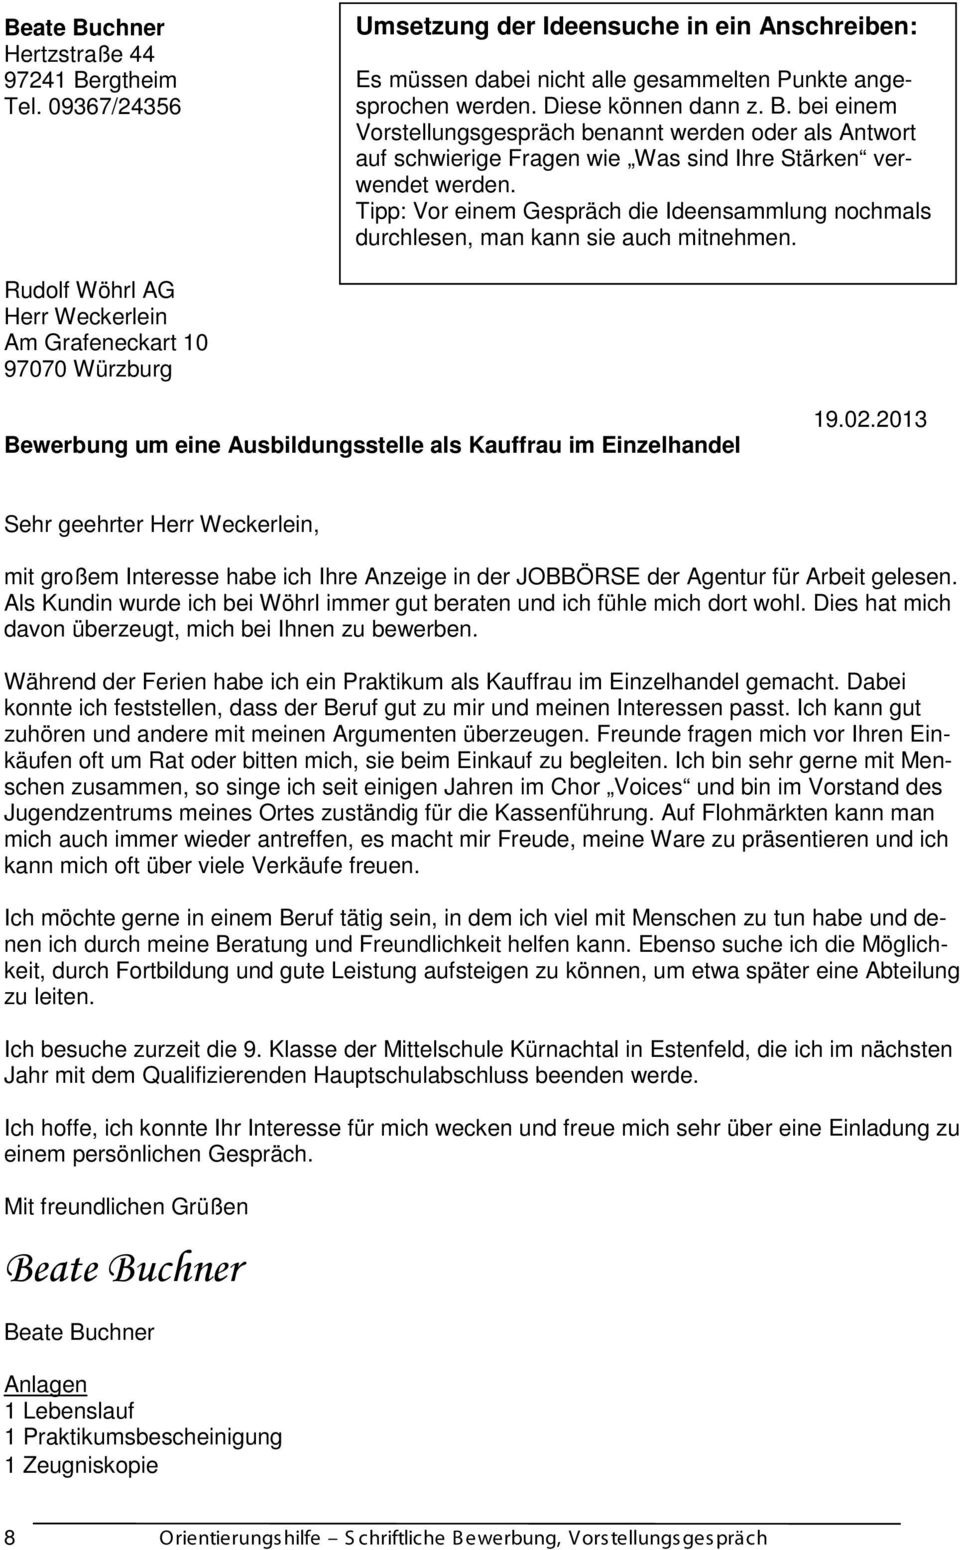 Rudolf Wöhrl AG Herr Weckerlein Am Grafeneckart 10 97070 Würzburg Bewerbung um eine Ausbildungsstelle als Kauffrau im Einzelhandel 19.02.